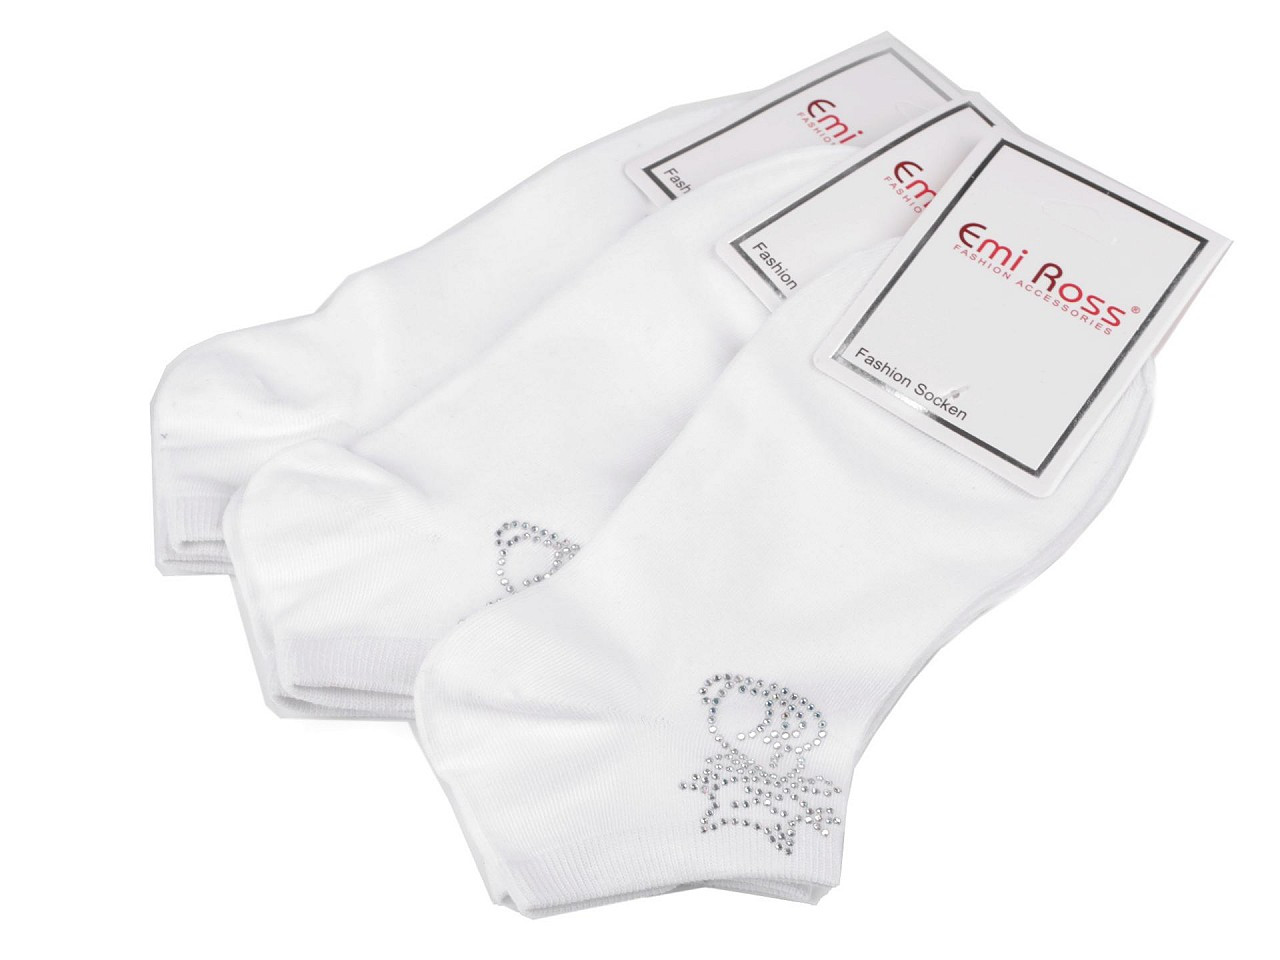 Dámské bavlněné ponožky kotníkové s kamínky Emi Ross, barva 50 (39-42) bílá